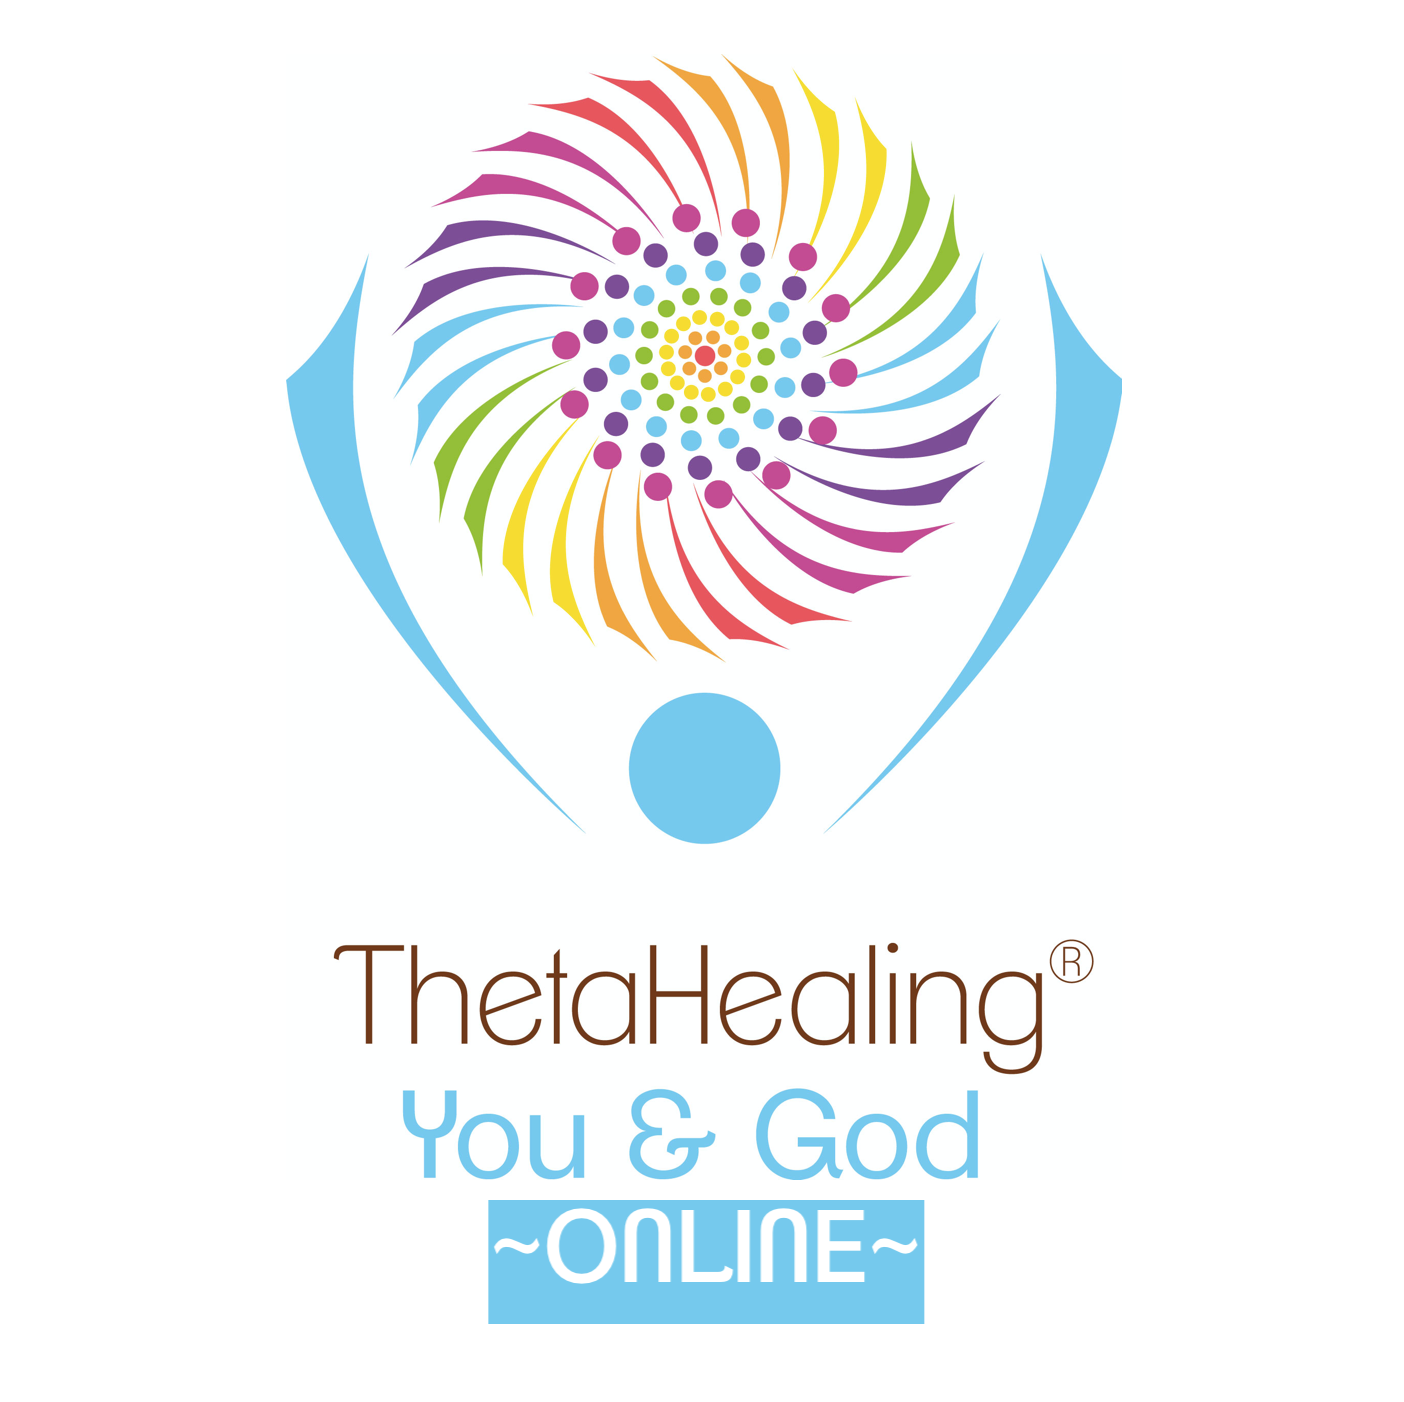 Online You & God